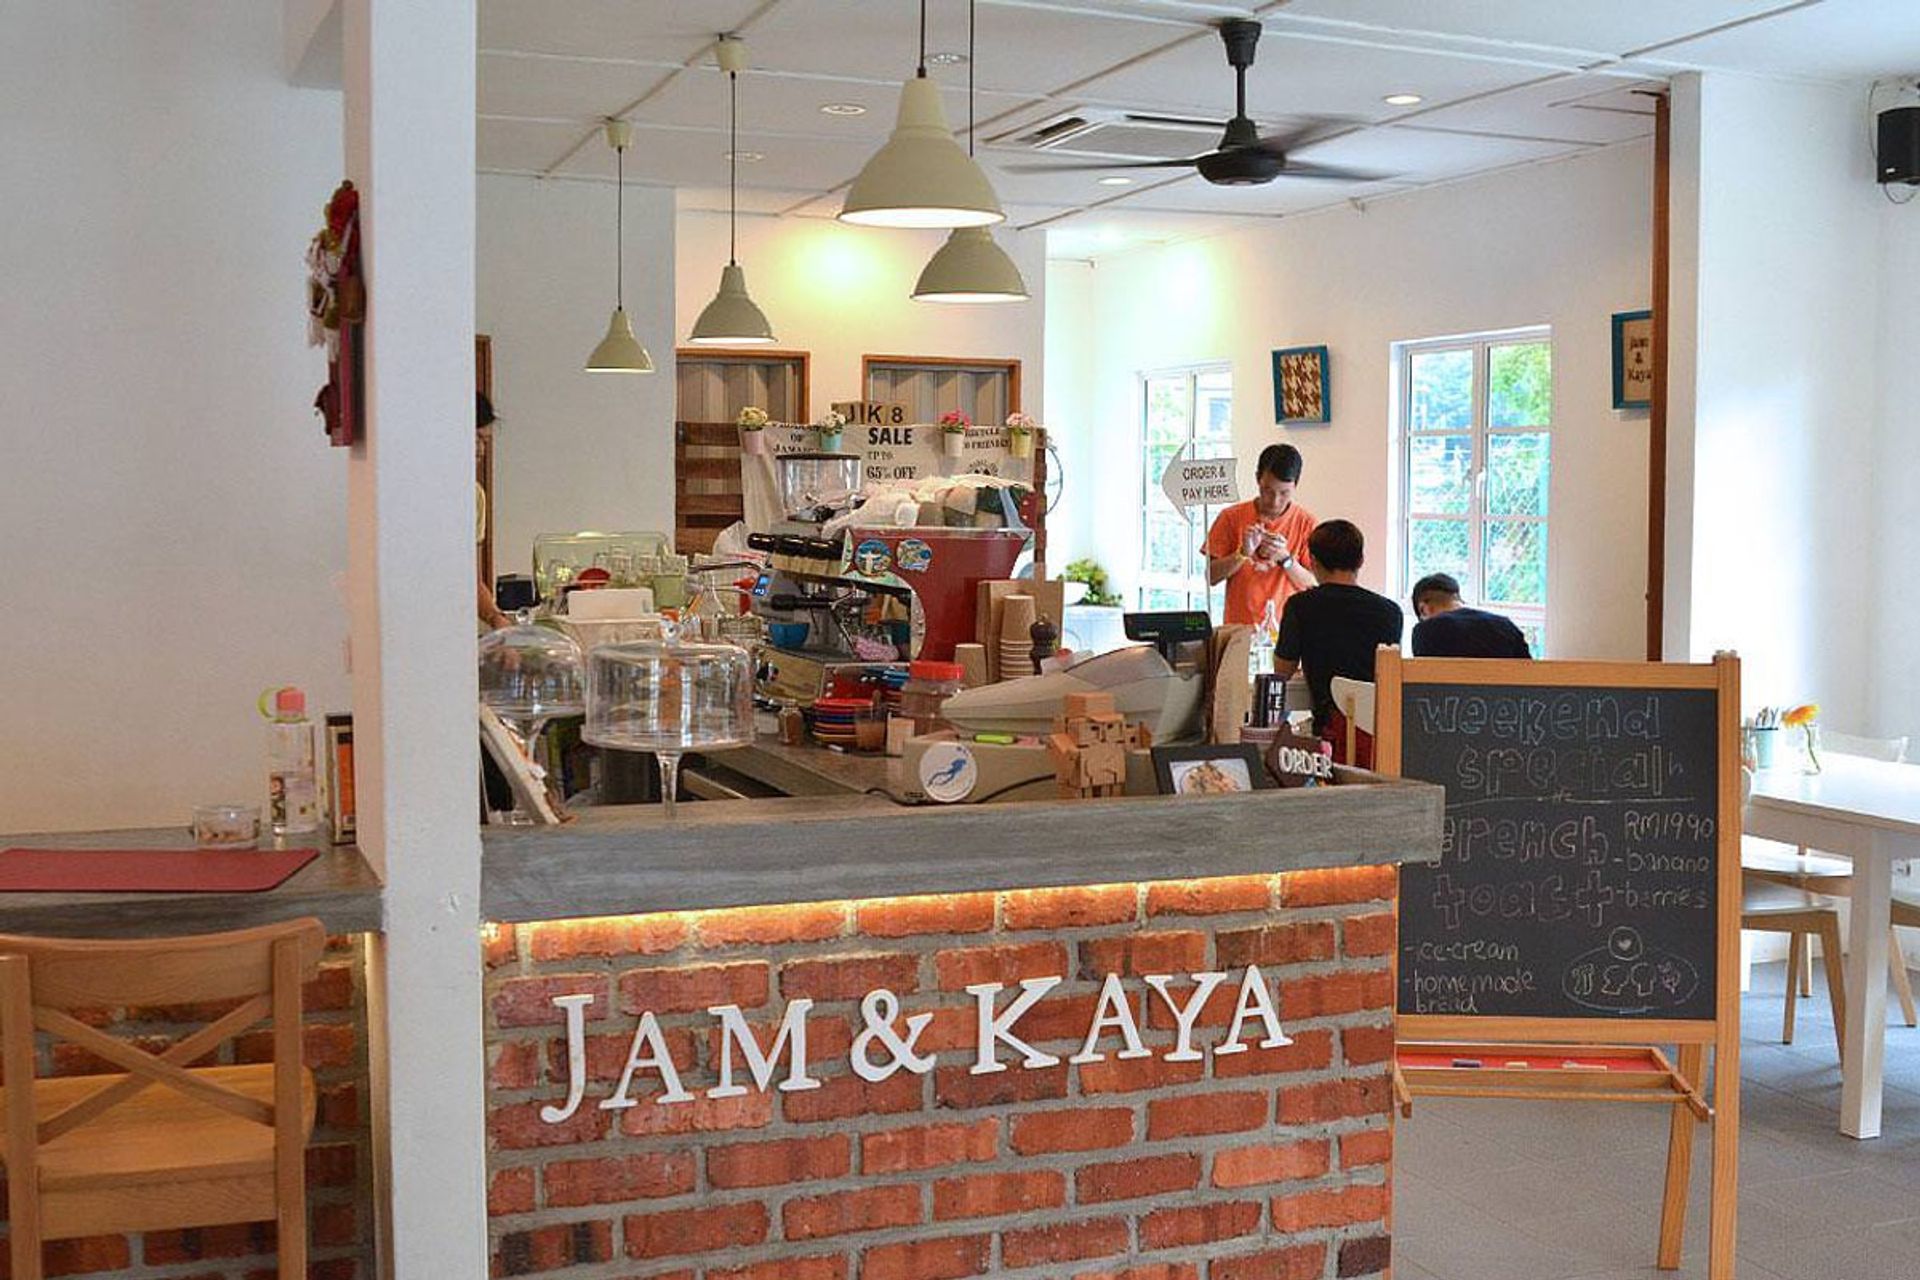  Jam & Kaya Cafe